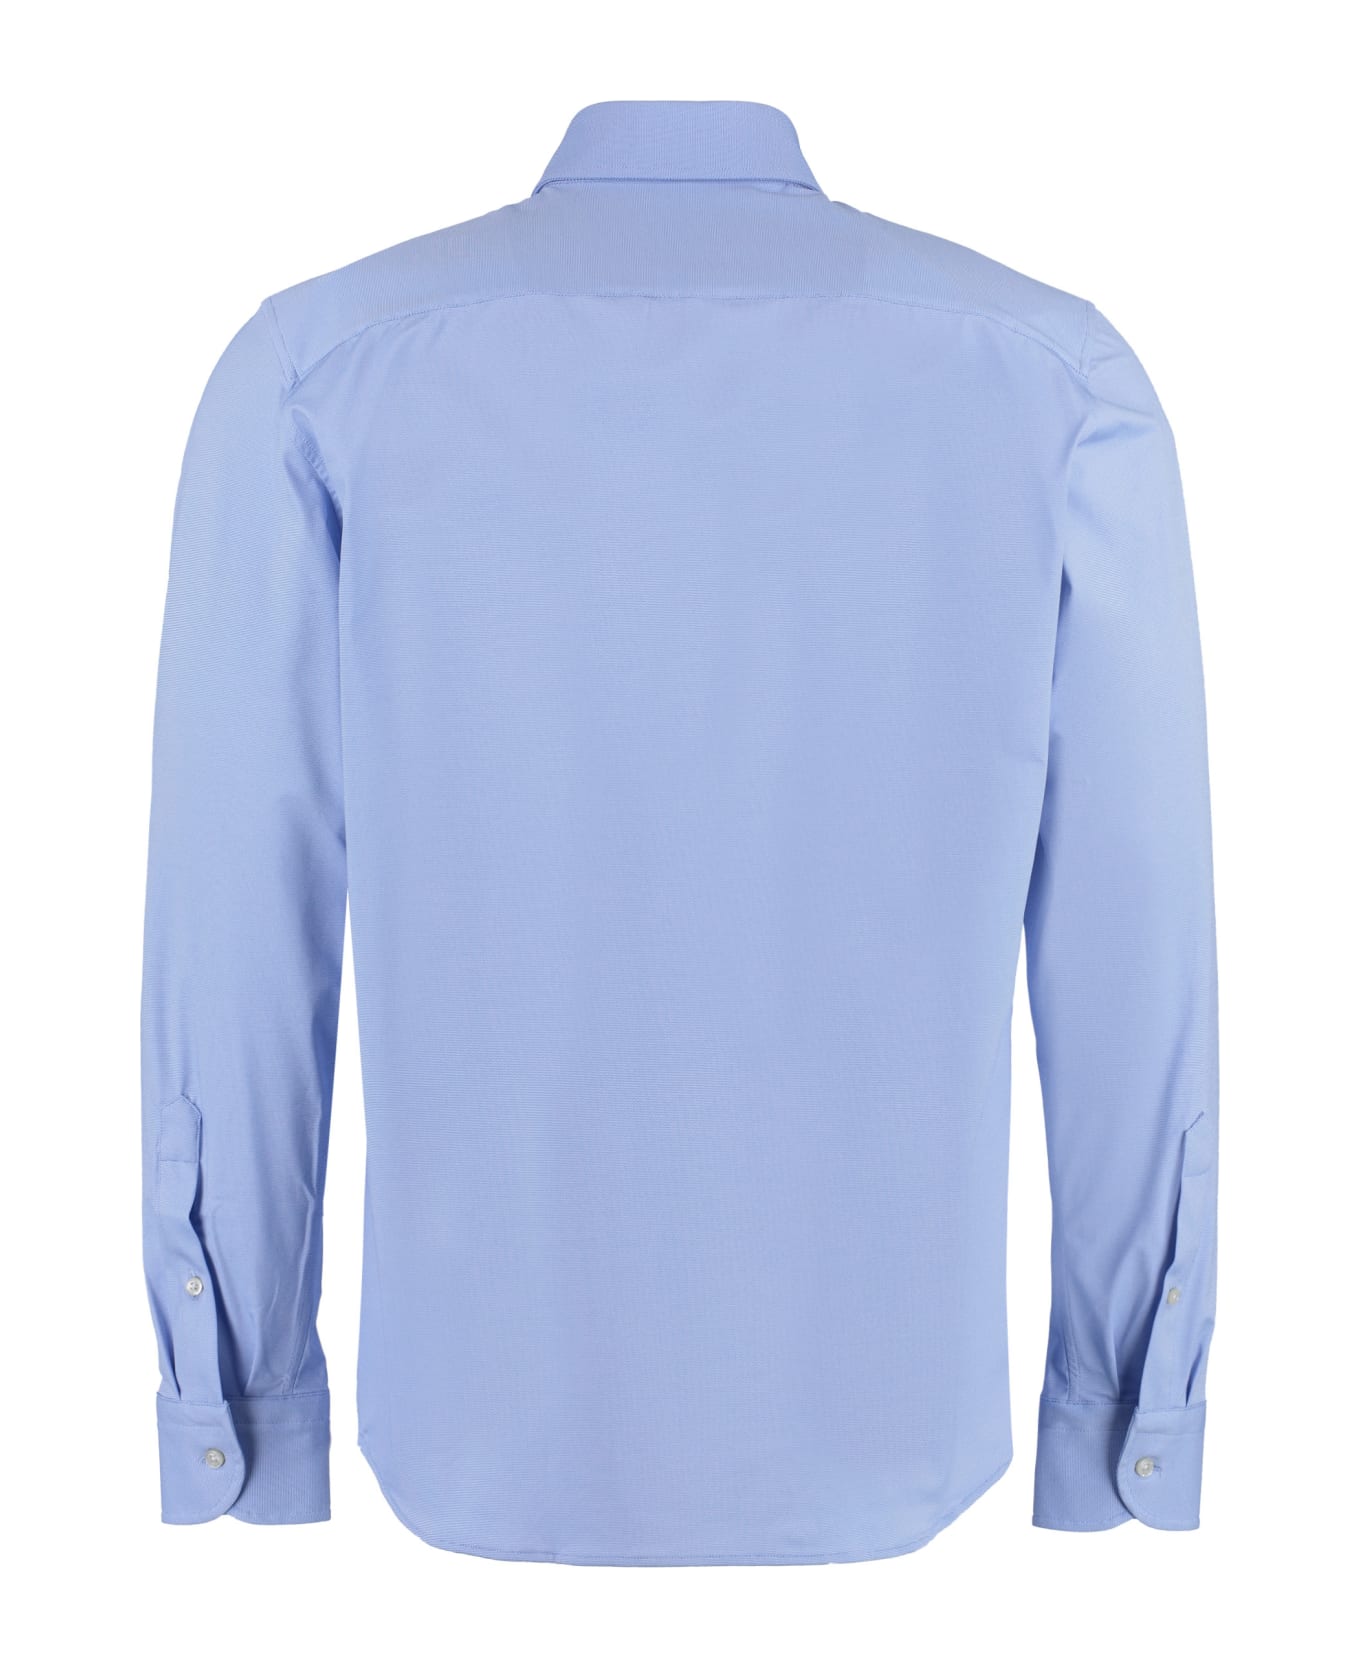 Sonrisa Viscose Jersey Shirt - Light Blue シャツ